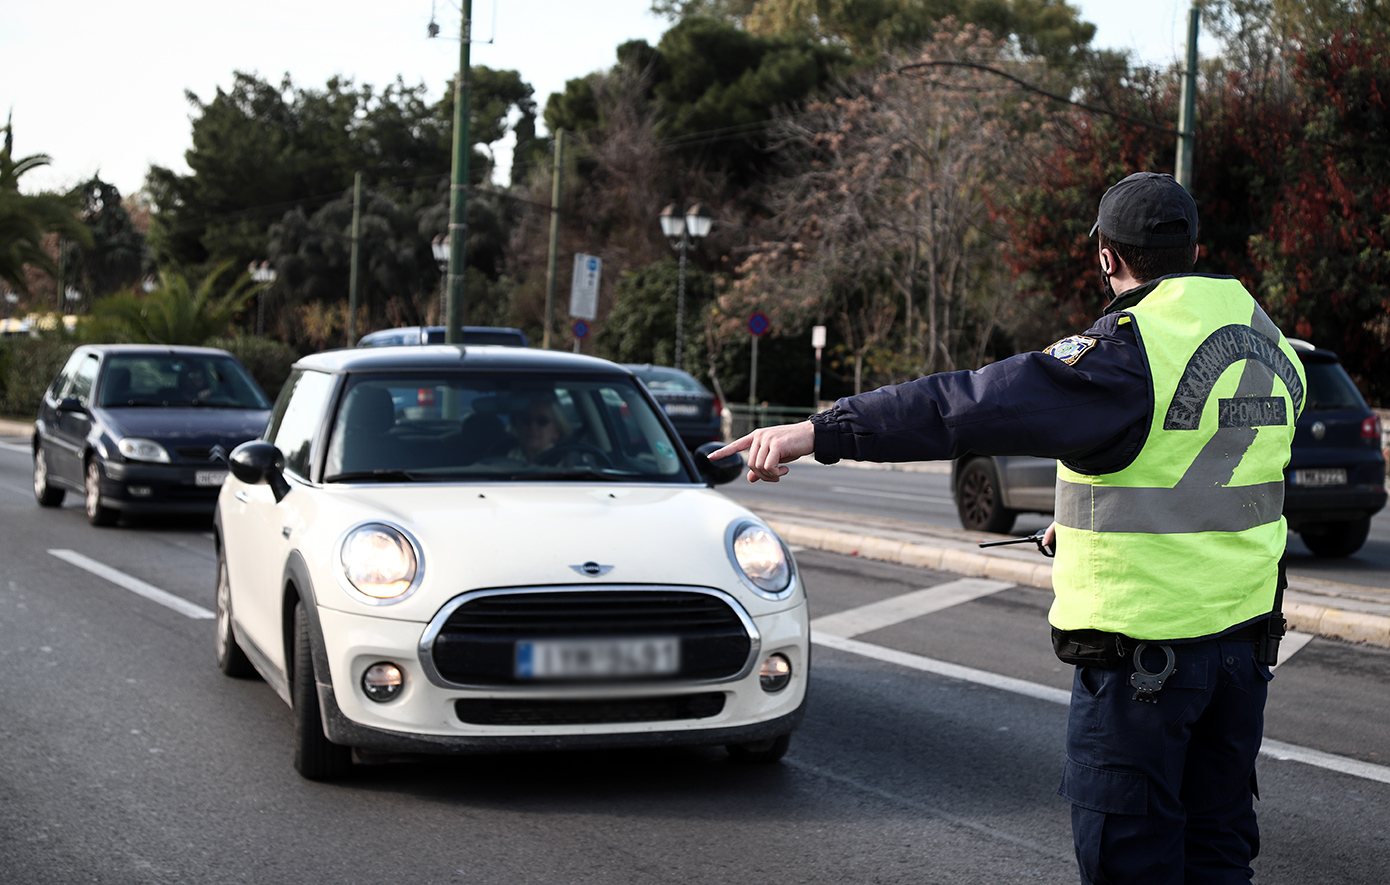 Αστυνομικοί έλεγχοι για τροχαίες παραβάσεις, ναρκωτικά και όπλα στην Κρήτη